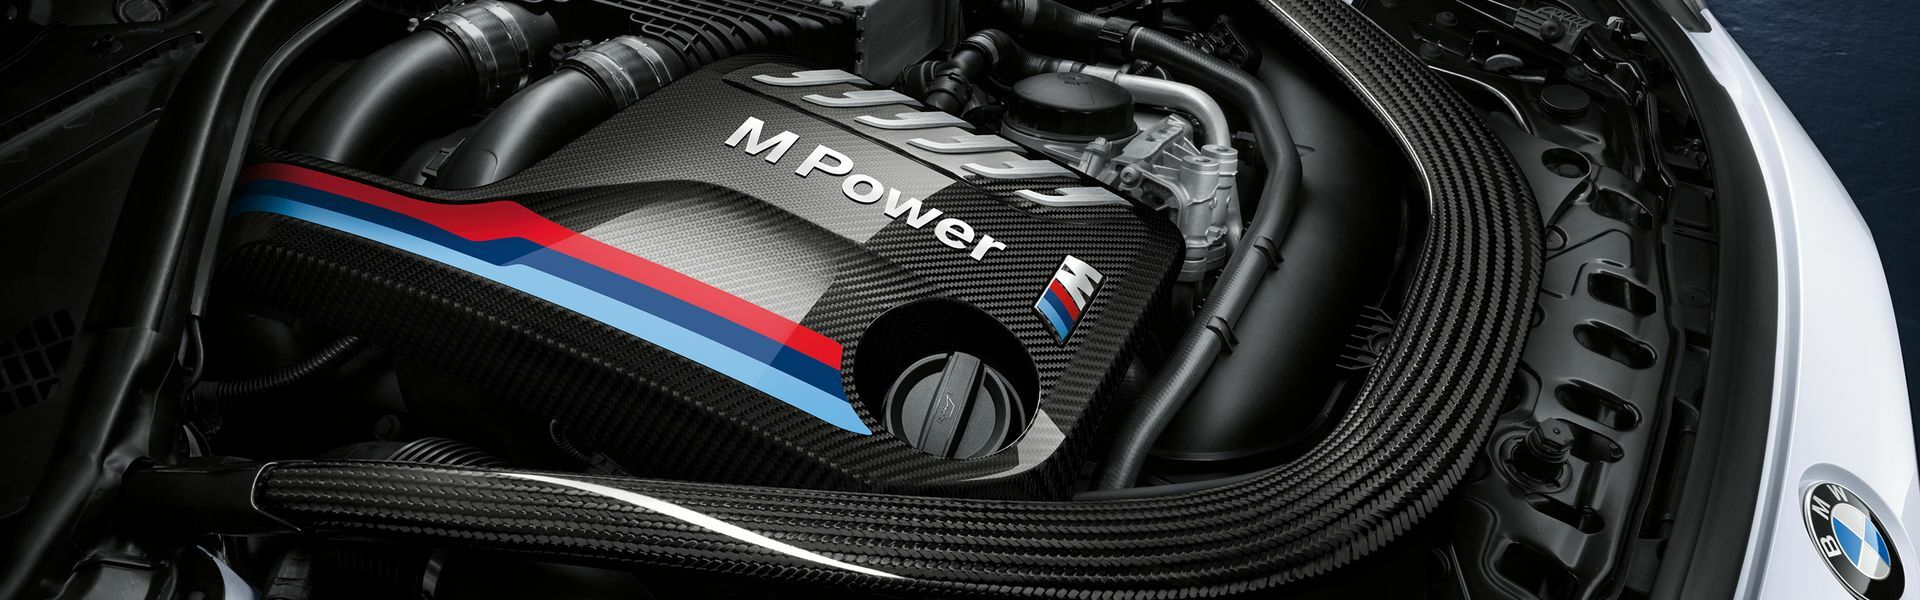 Zvýšení výkonu/ Softwarové úpravy/ Drobné performance díly pro automobil Porsche 911 Turbo / Turbo S 992